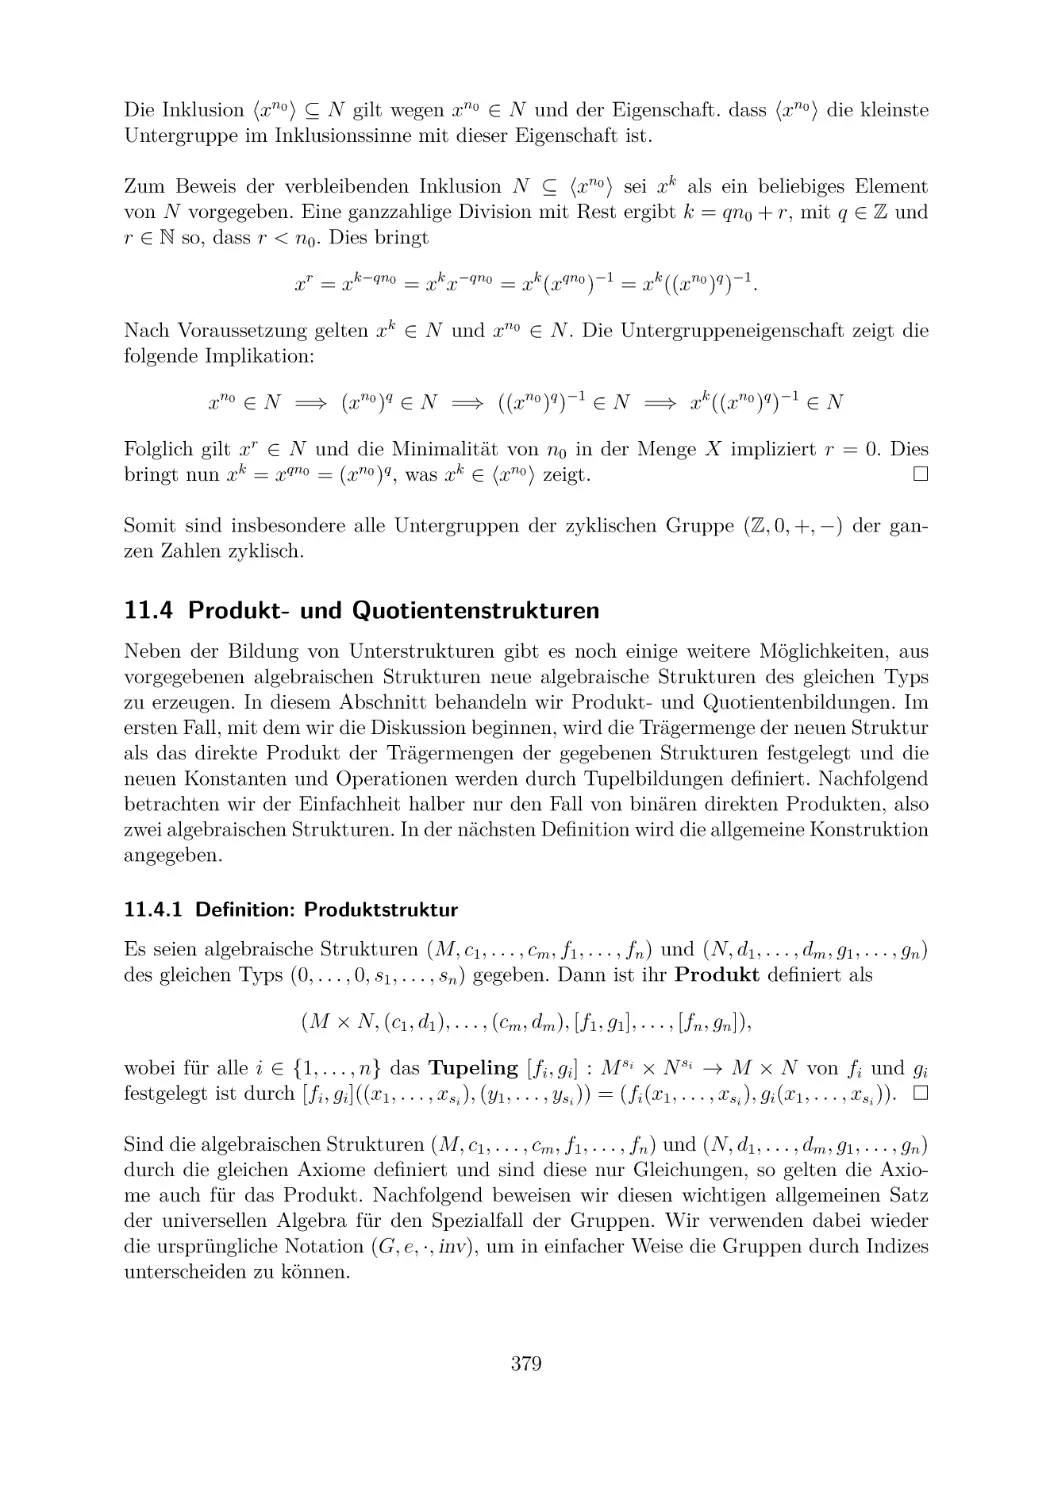 11.4 Produkt- und Quotientenstrukturen
11.4.1 Definition